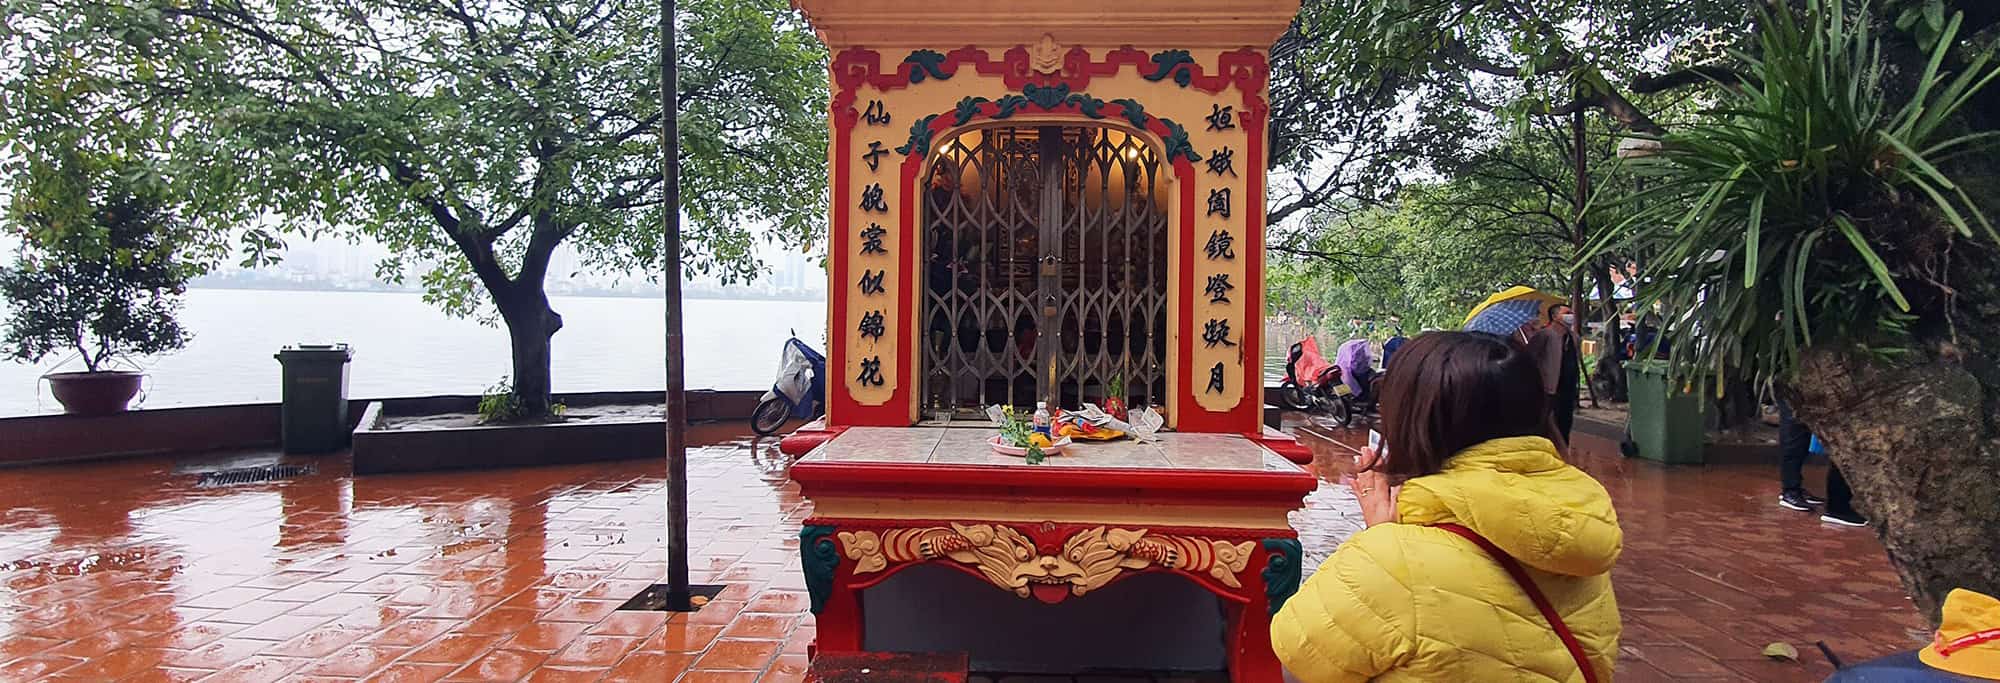 A Tale of Tay Ho Temple (Phu Tay Ho) in Hanoi